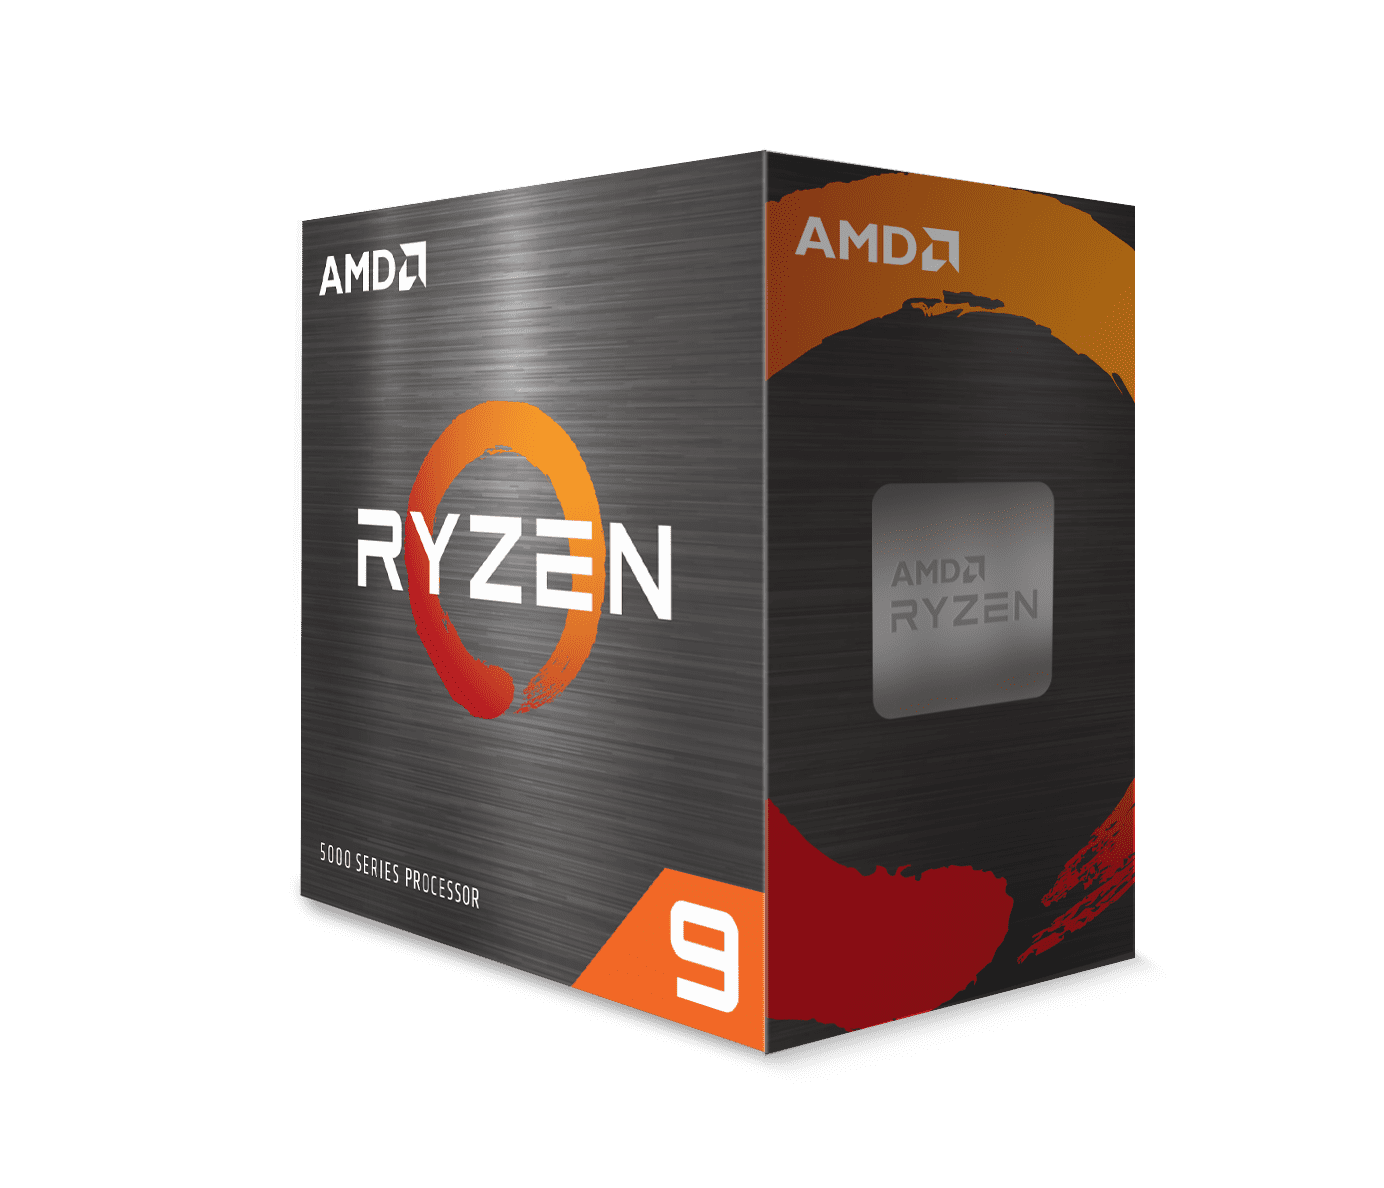 AMD Ryzen 9 5900X 3.7 GHz 12-Core AM4 Unlocked Desktop Processor $343.90 + Free Shipping